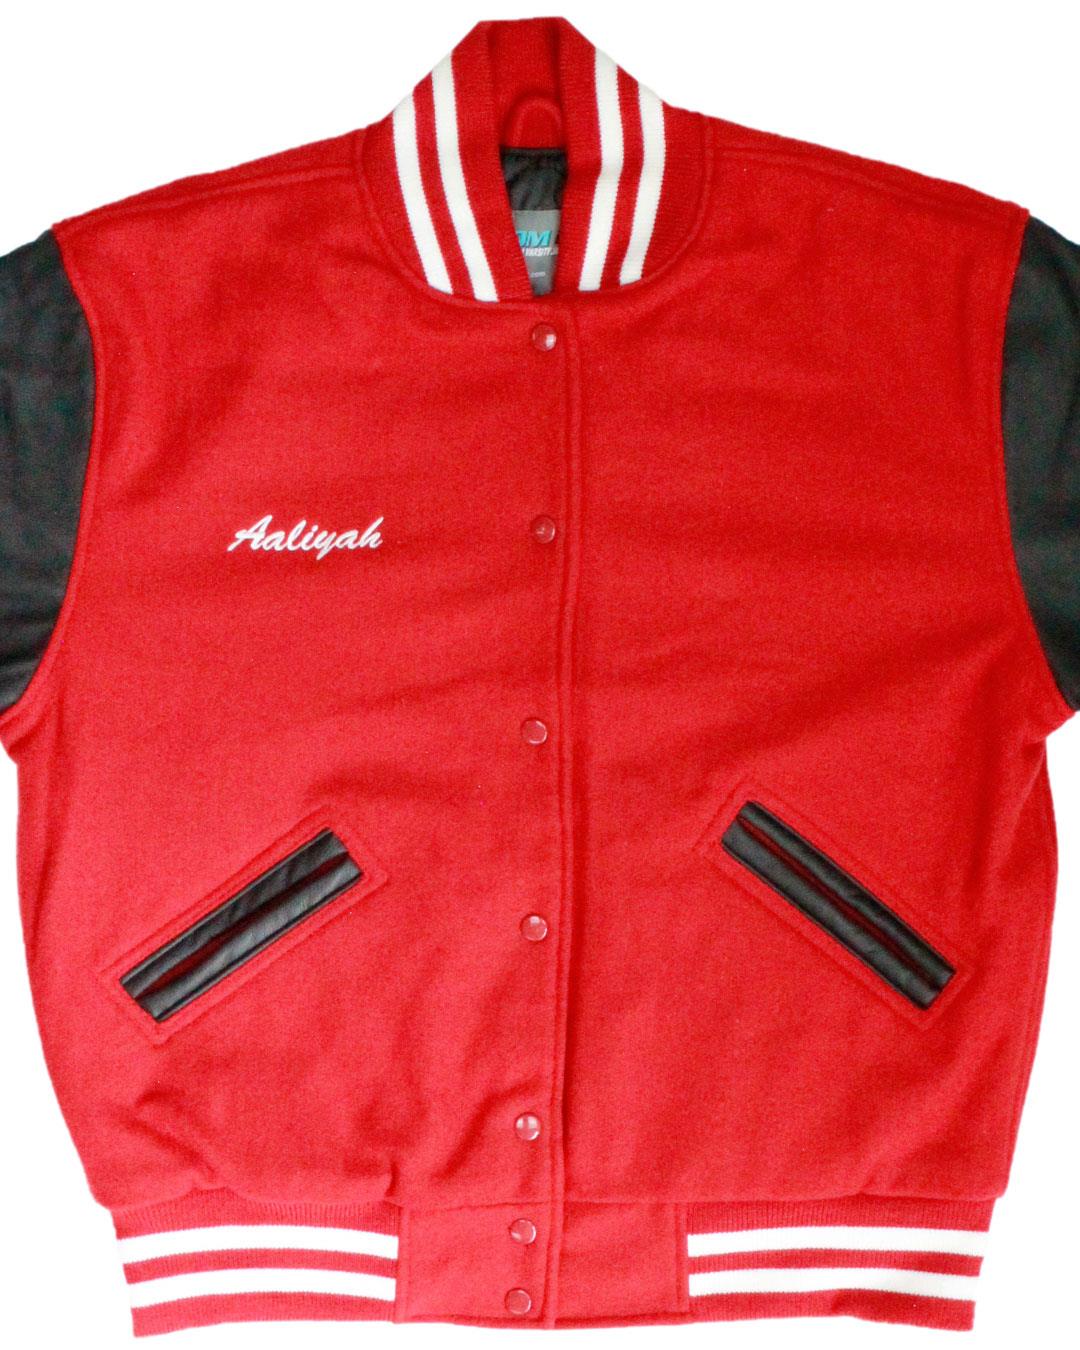 Luverne High School Cardinals Letterman Jacket, Luverne MN - Front